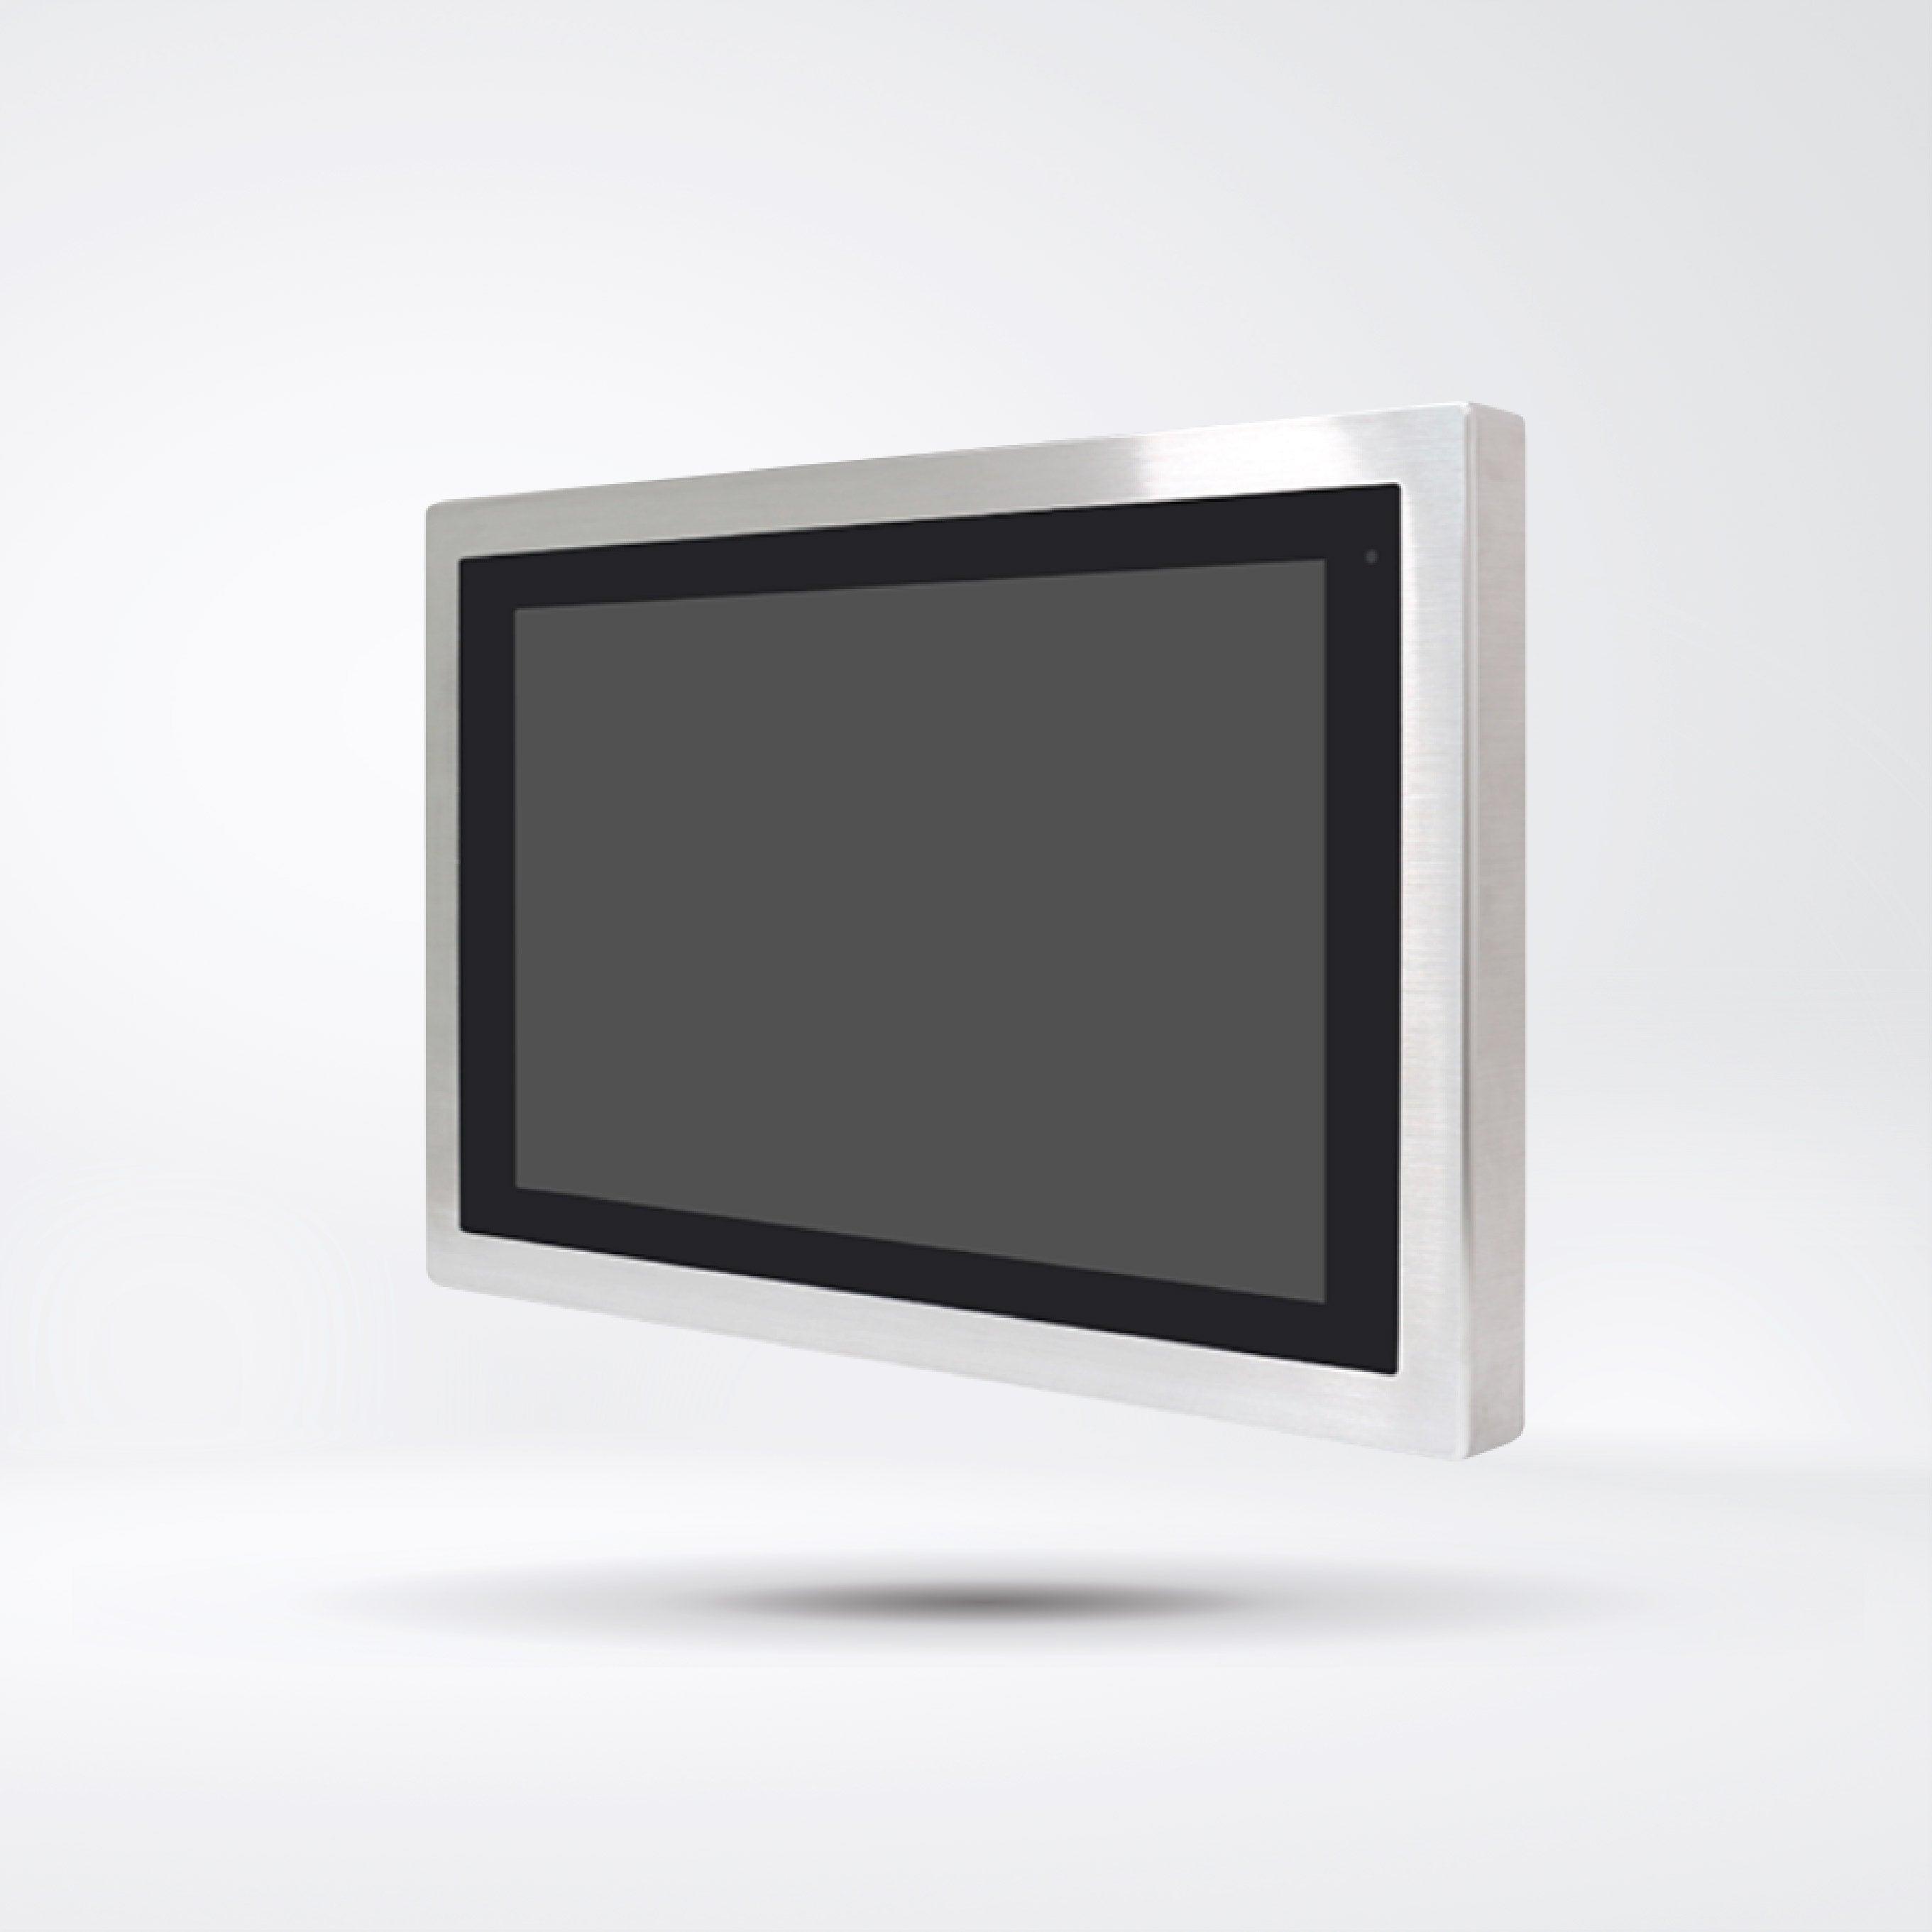 AEx-116P 15.6” ATEX Certified Stainless Steel Display - Riverplus